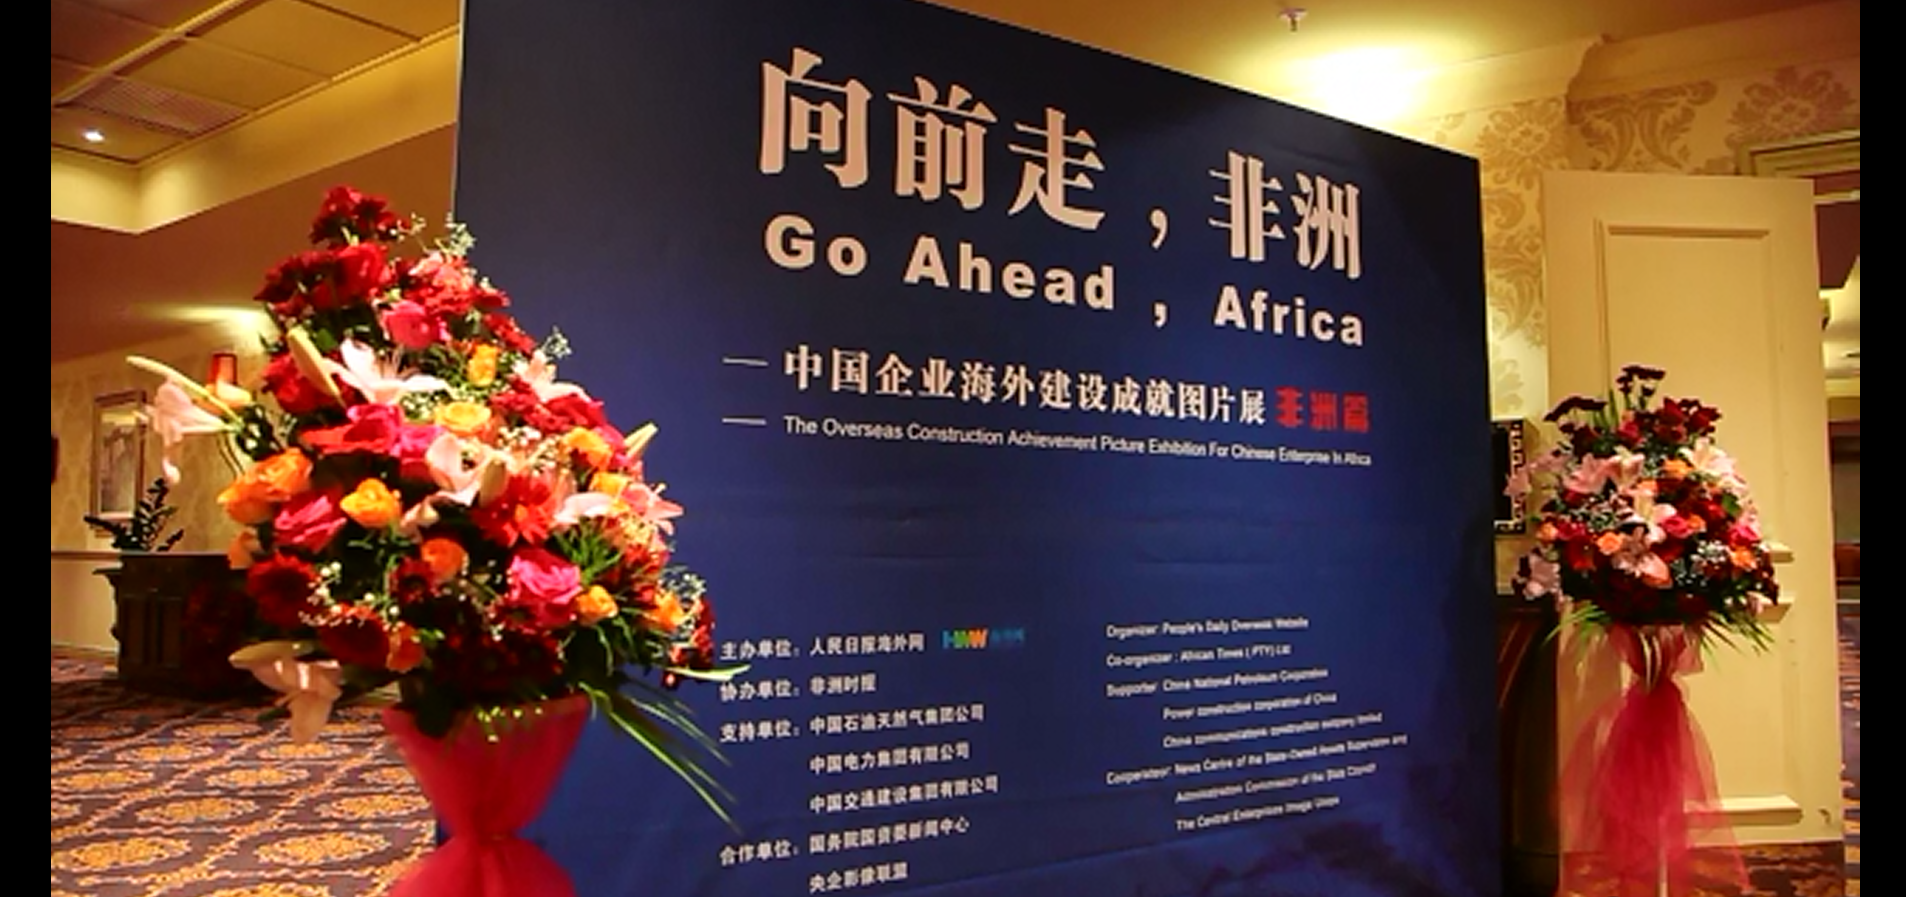 海外网为走进非洲的中国企业点赞